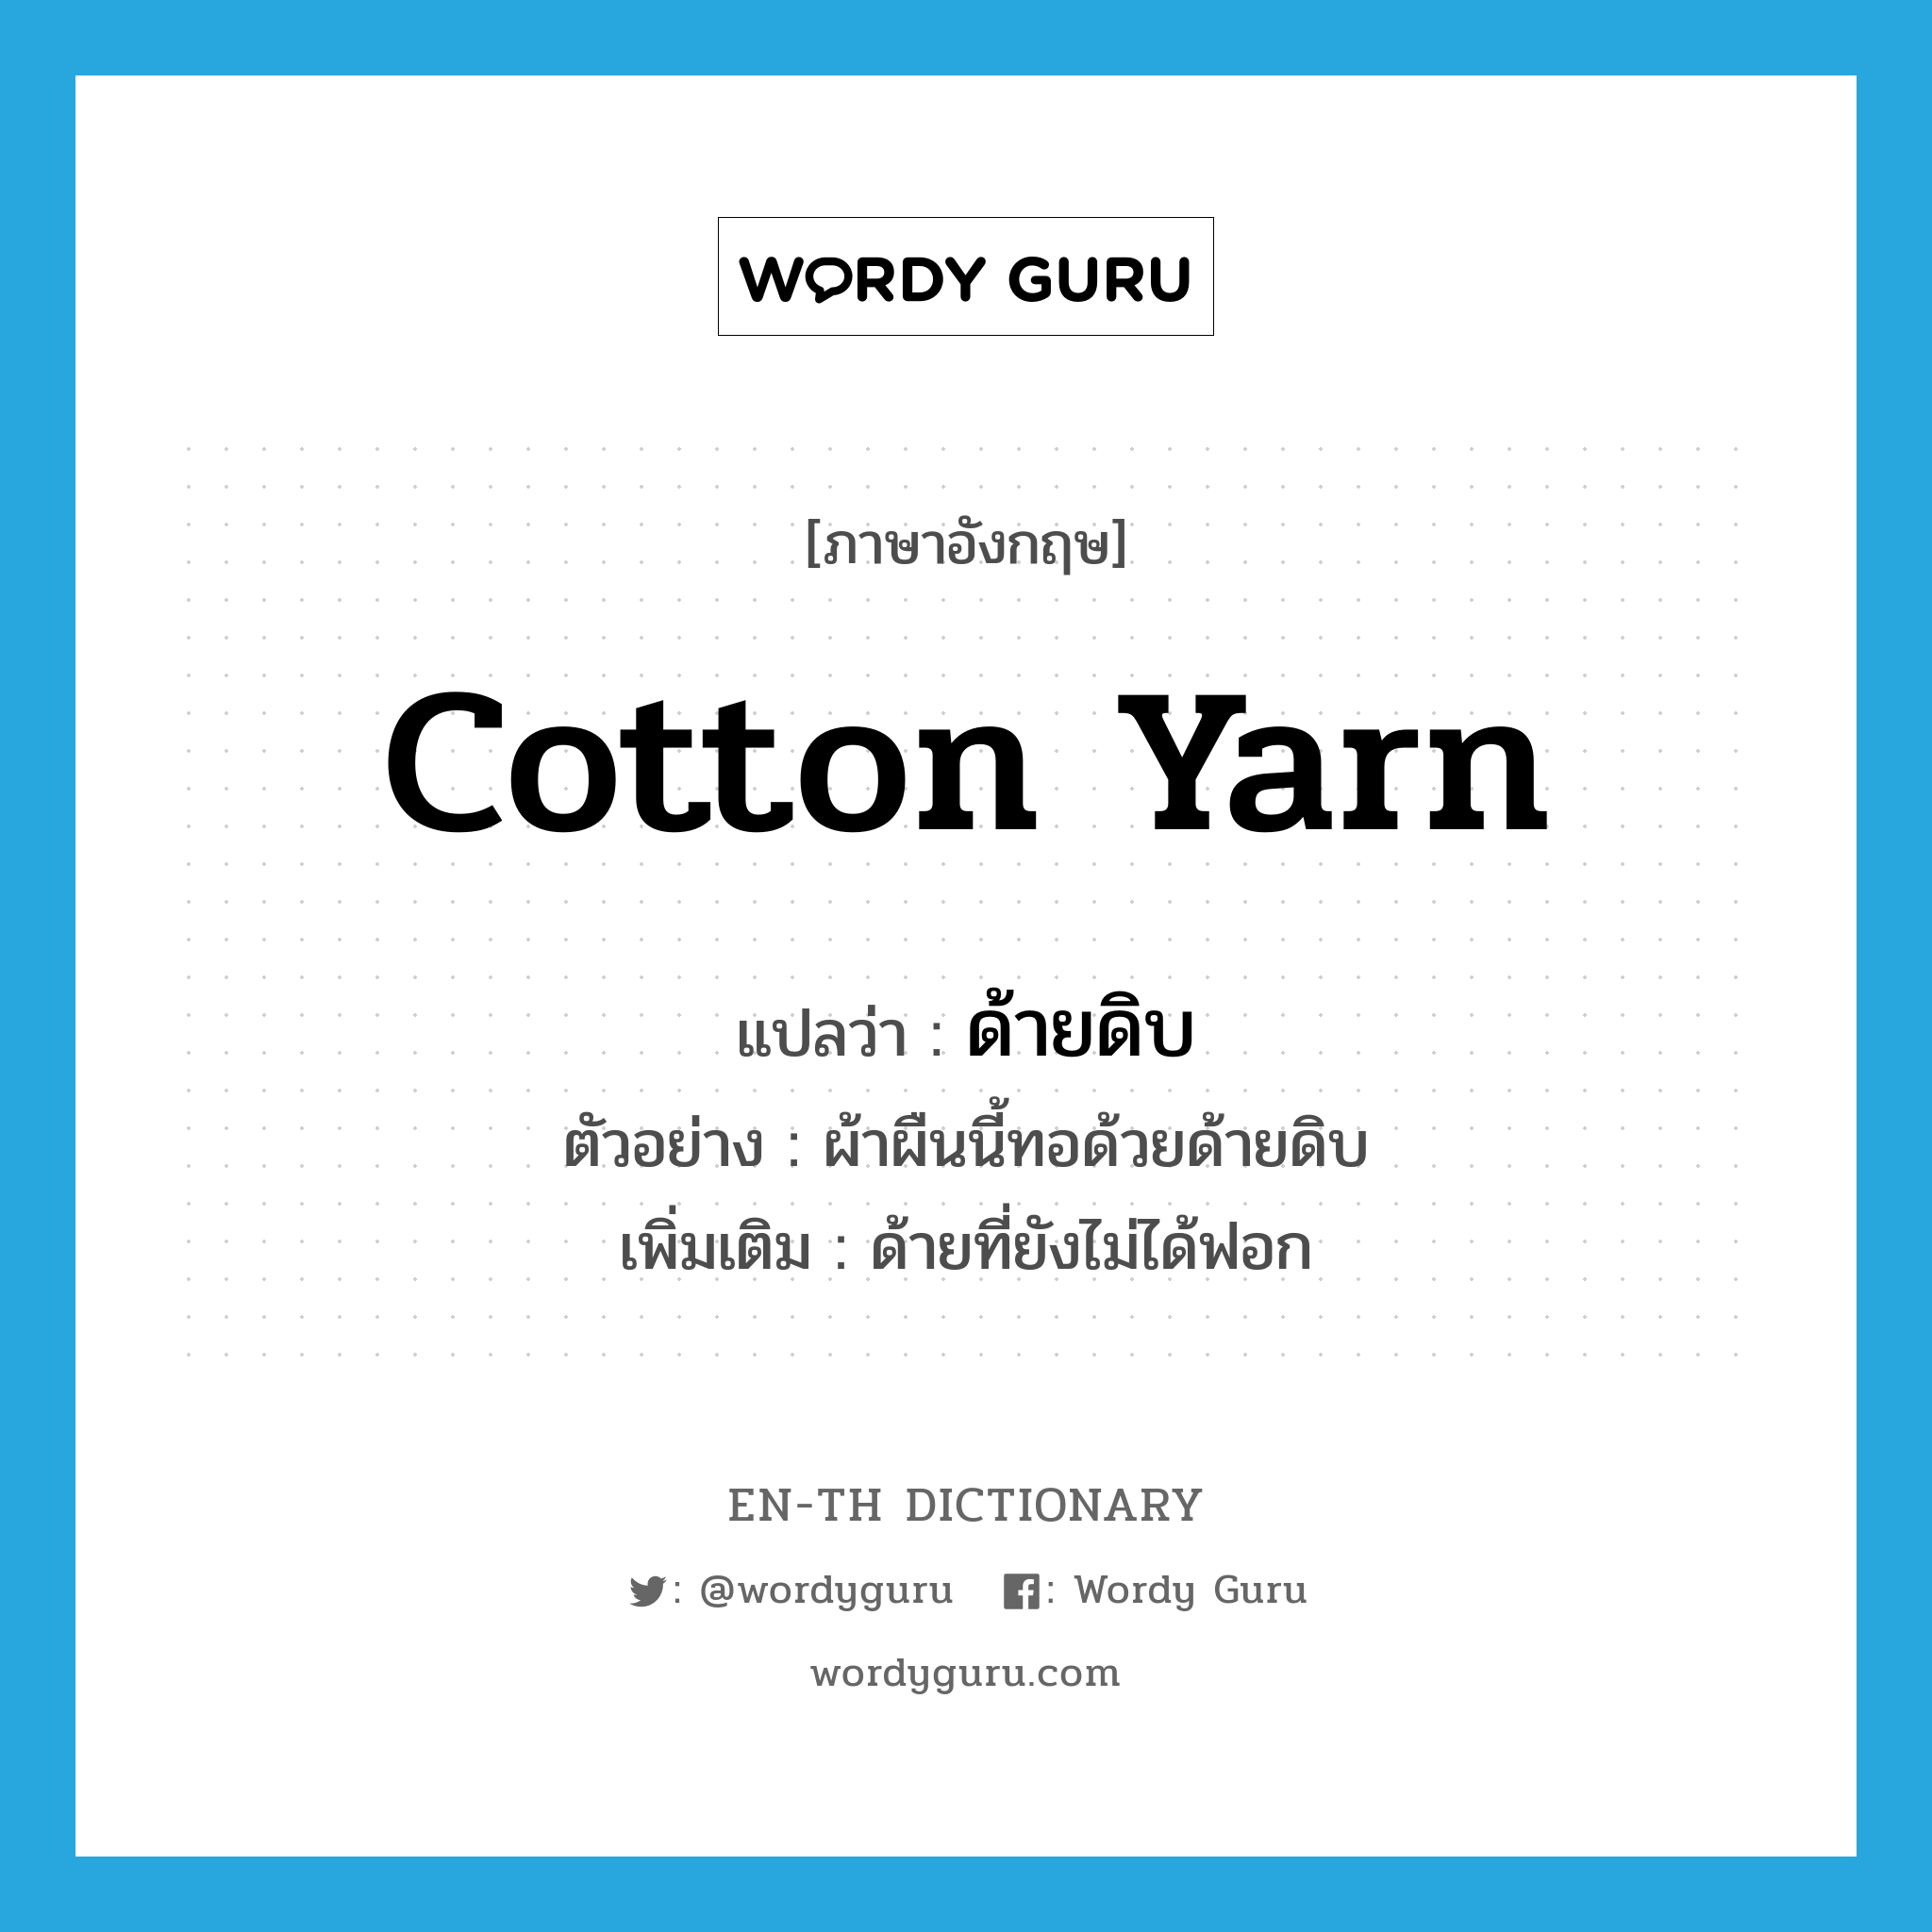 cotton yarn แปลว่า?, คำศัพท์ภาษาอังกฤษ cotton yarn แปลว่า ด้ายดิบ ประเภท N ตัวอย่าง ผ้าผืนนี้ทอด้วยด้ายดิบ เพิ่มเติม ด้ายที่ยังไม่ได้ฟอก หมวด N